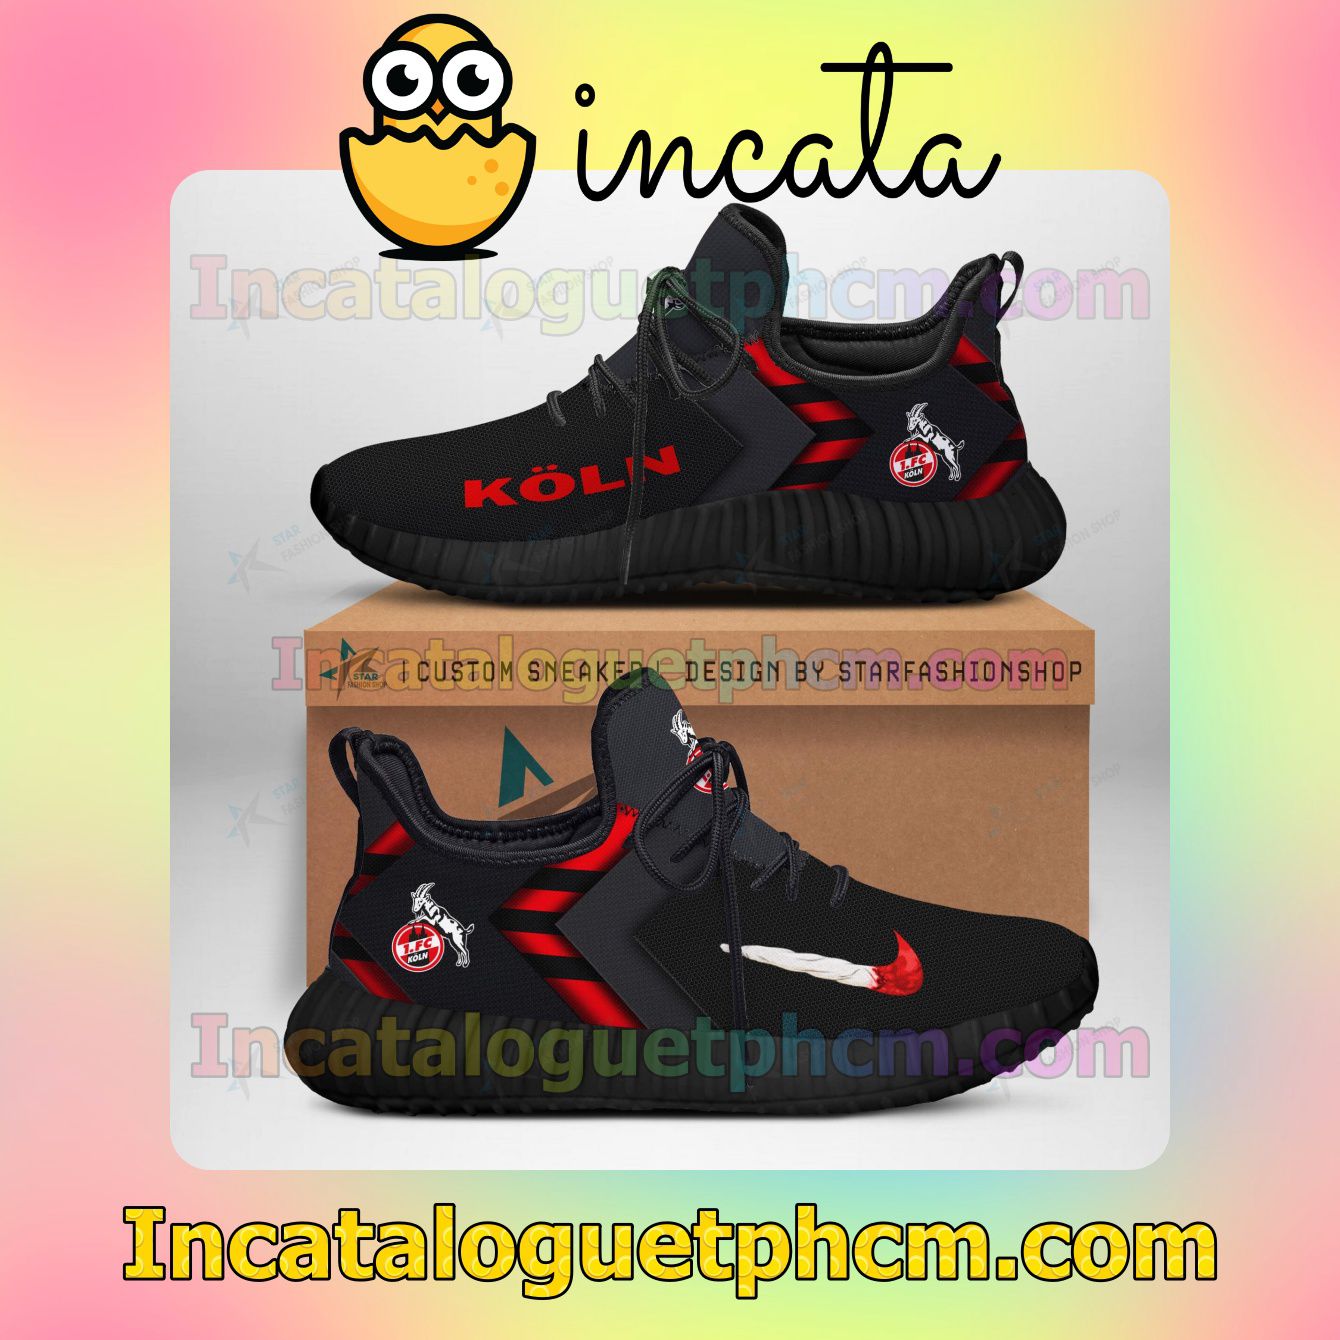 1. FC Koln Ultraboost Yeezy Shoes Sneakers